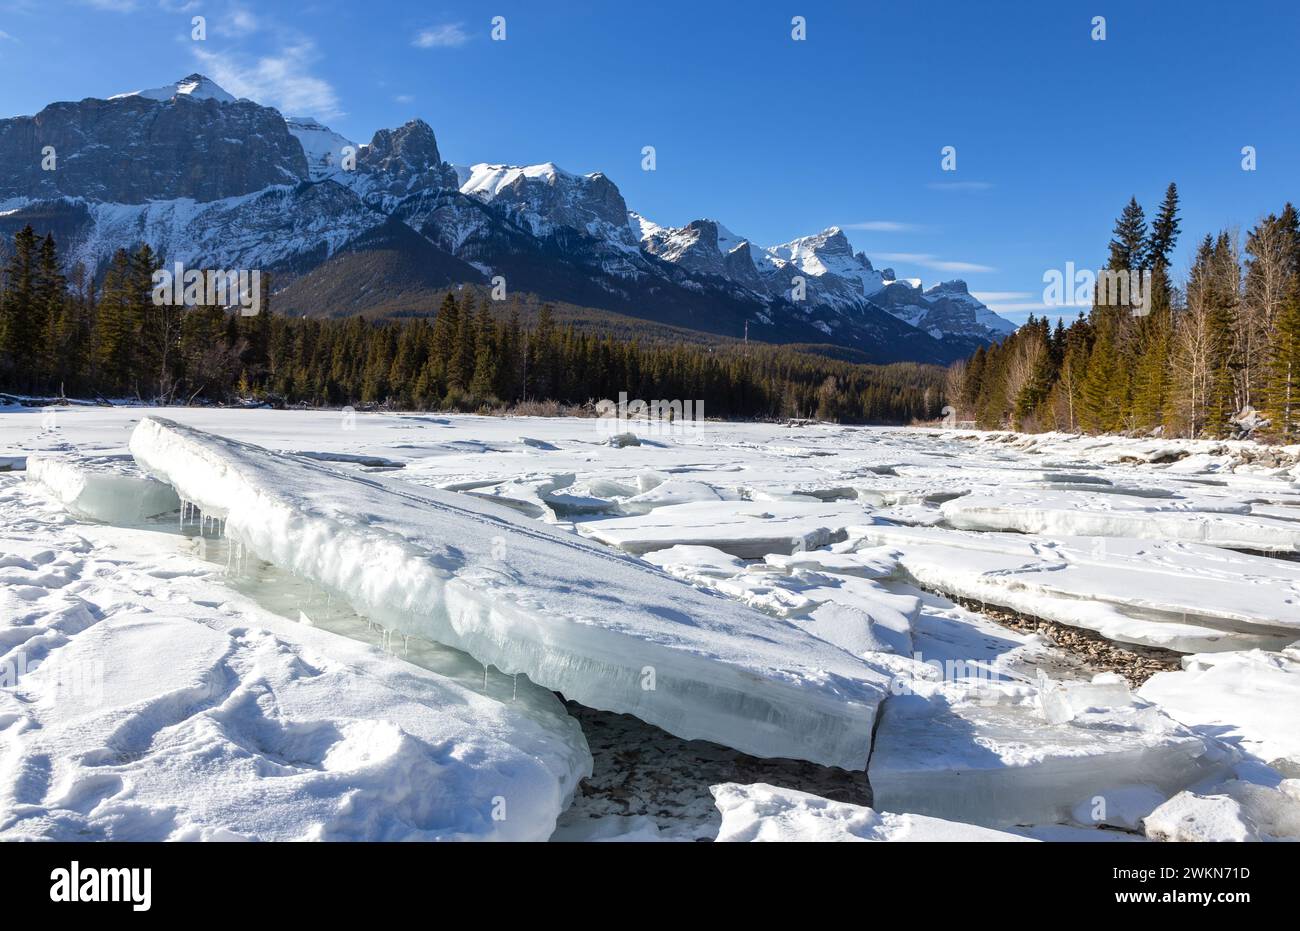 Blocs de glace fracturés de la rivière, paysage des montagnes Rocheuses canadiennes recouvert de neige. Pittoresque jour d'hiver ensoleillé Canmore Alberta Canada, parc national Banff Banque D'Images